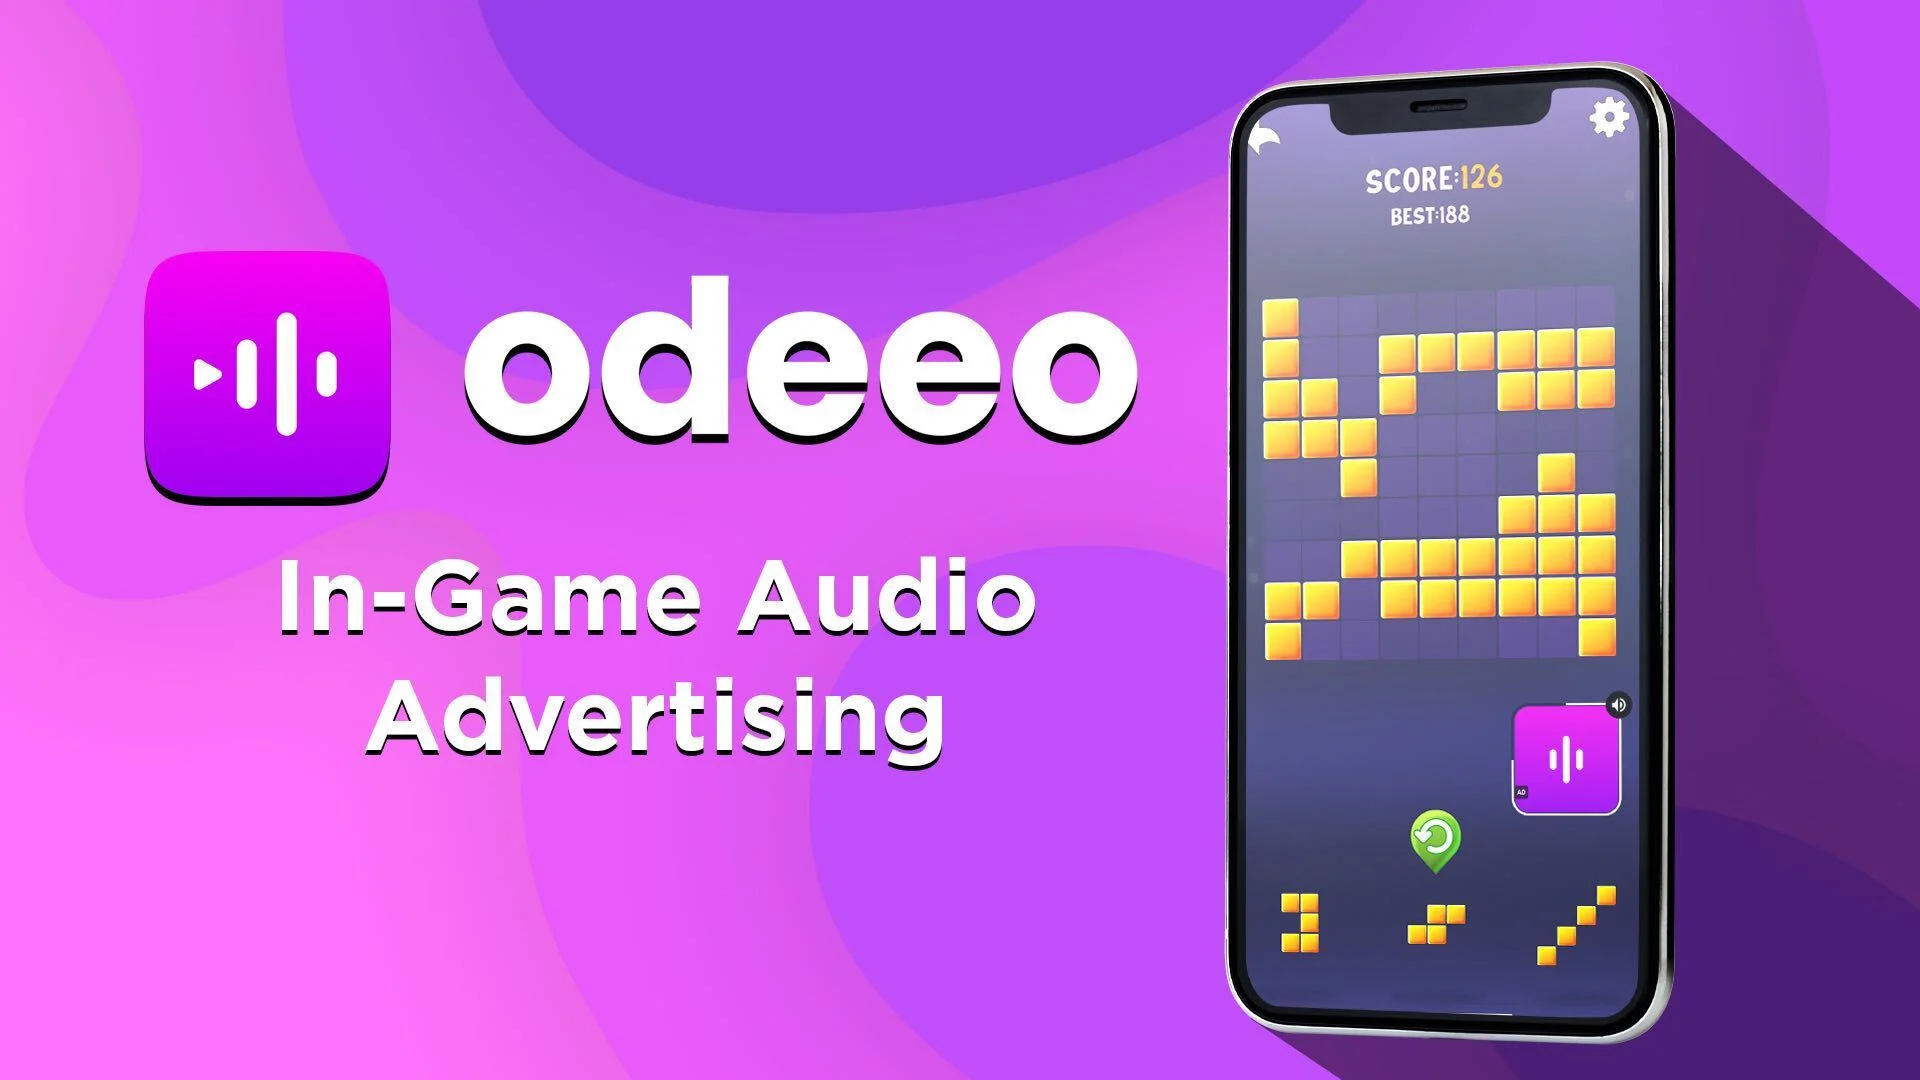 ゲーム内音声広告のOdeeo、ウガンダのゲーム制作会社と新たなパートナーシップを発表